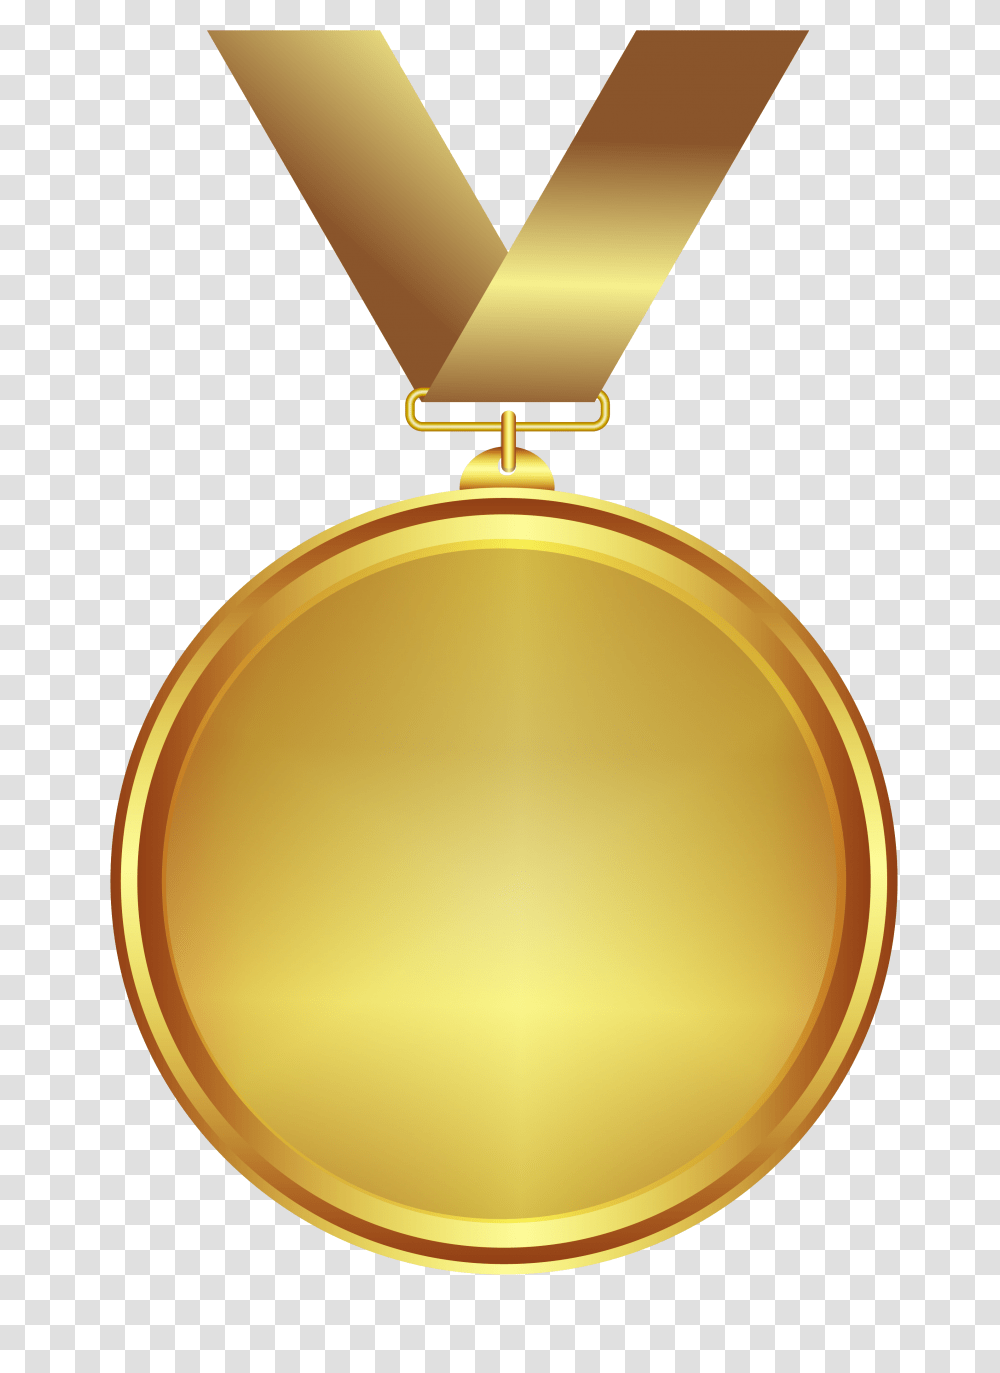 Medal Gold Design Medal, Trophy, Lamp, Gold Medal Transparent Png